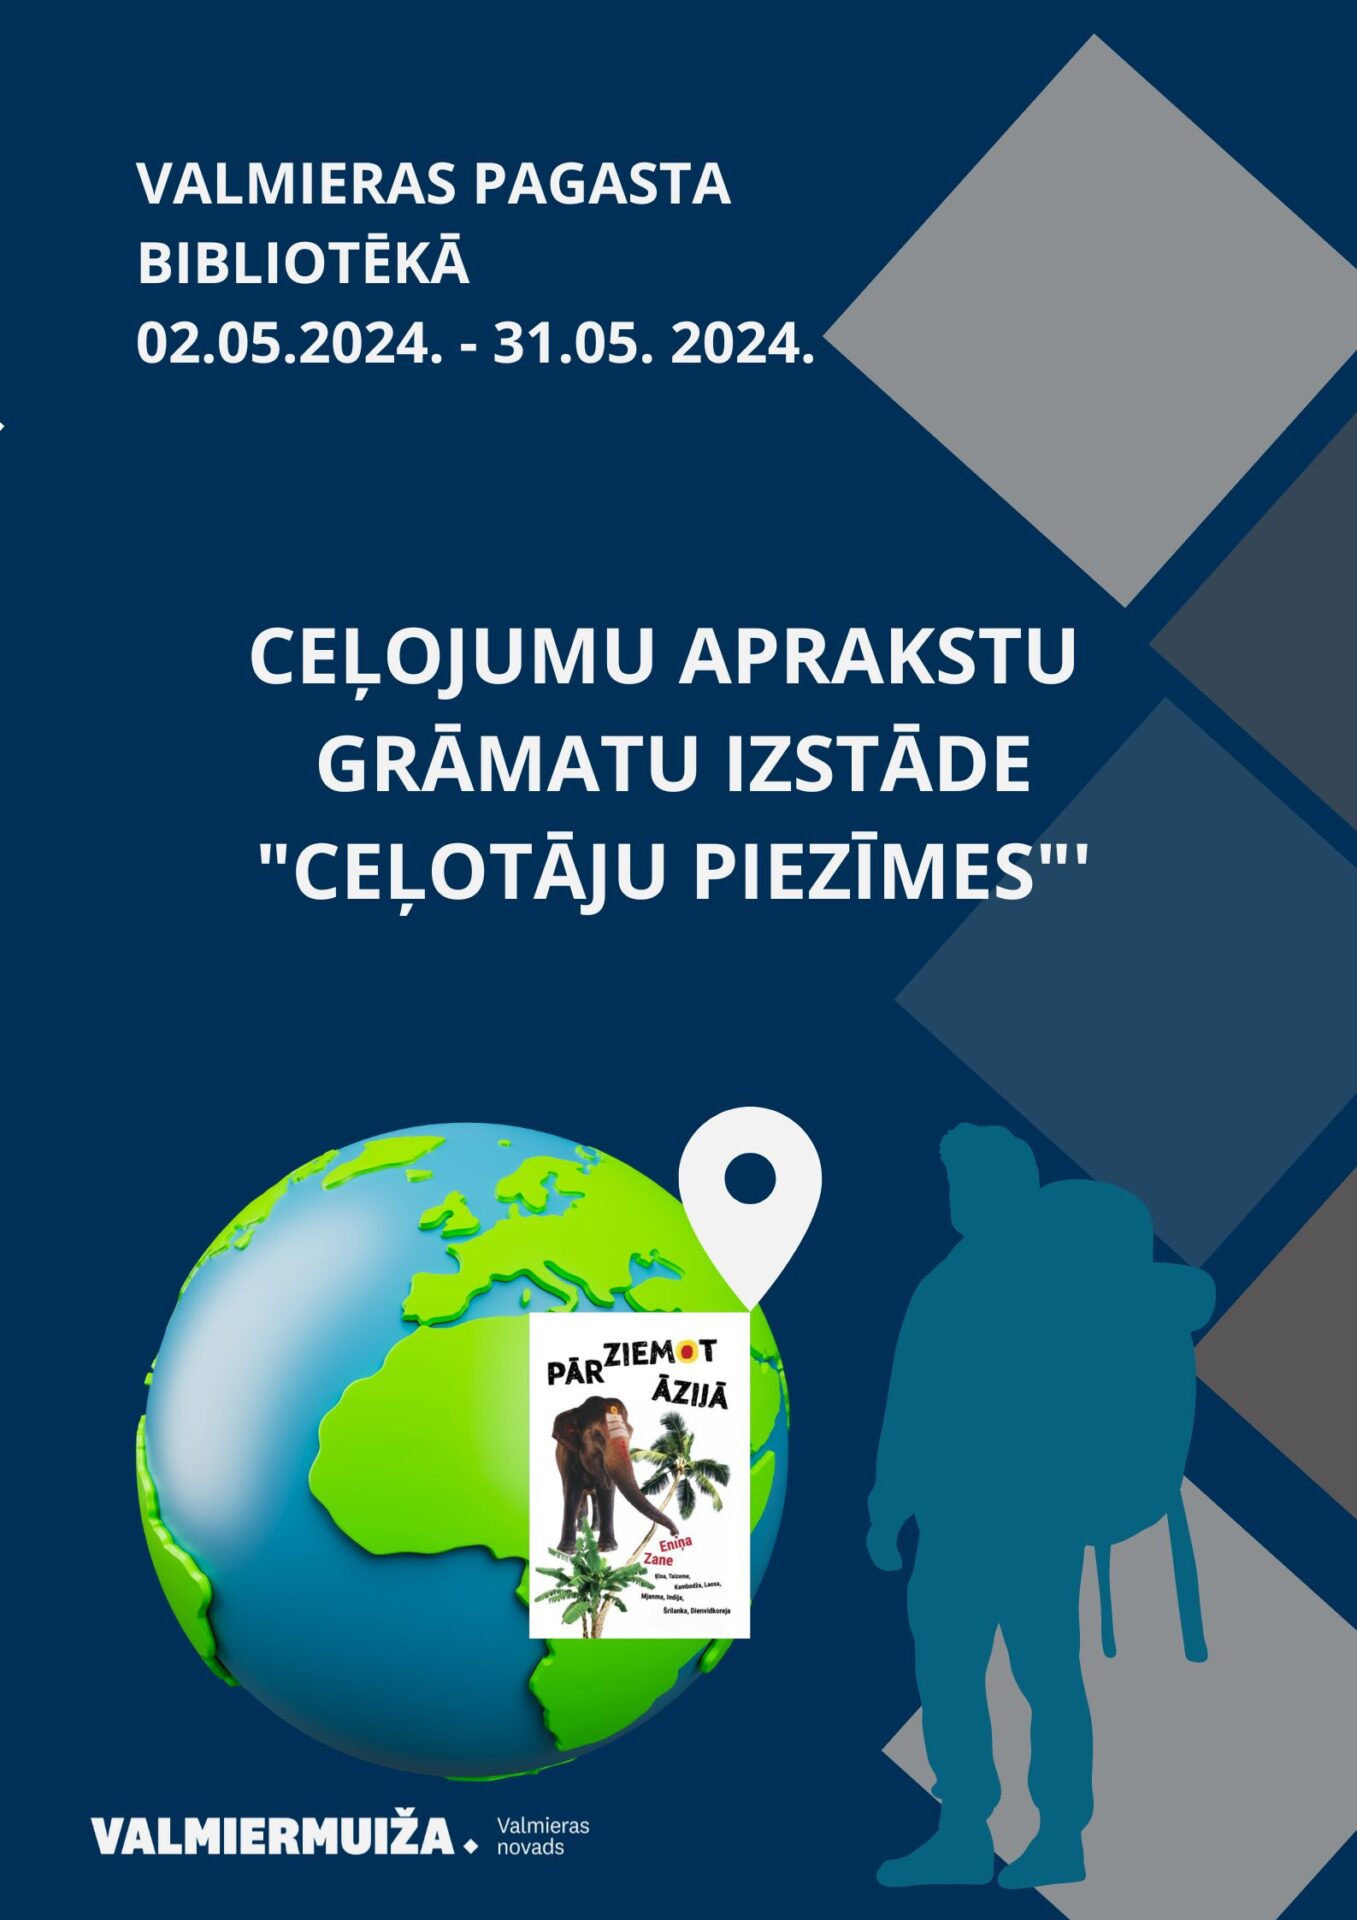 No 2. līdz 31. maijam Valmieras pagasta bibliotēkā aplūkojama ceļojumu aprakstu grāmatu izstāde "Ceļotāju piezīmes".